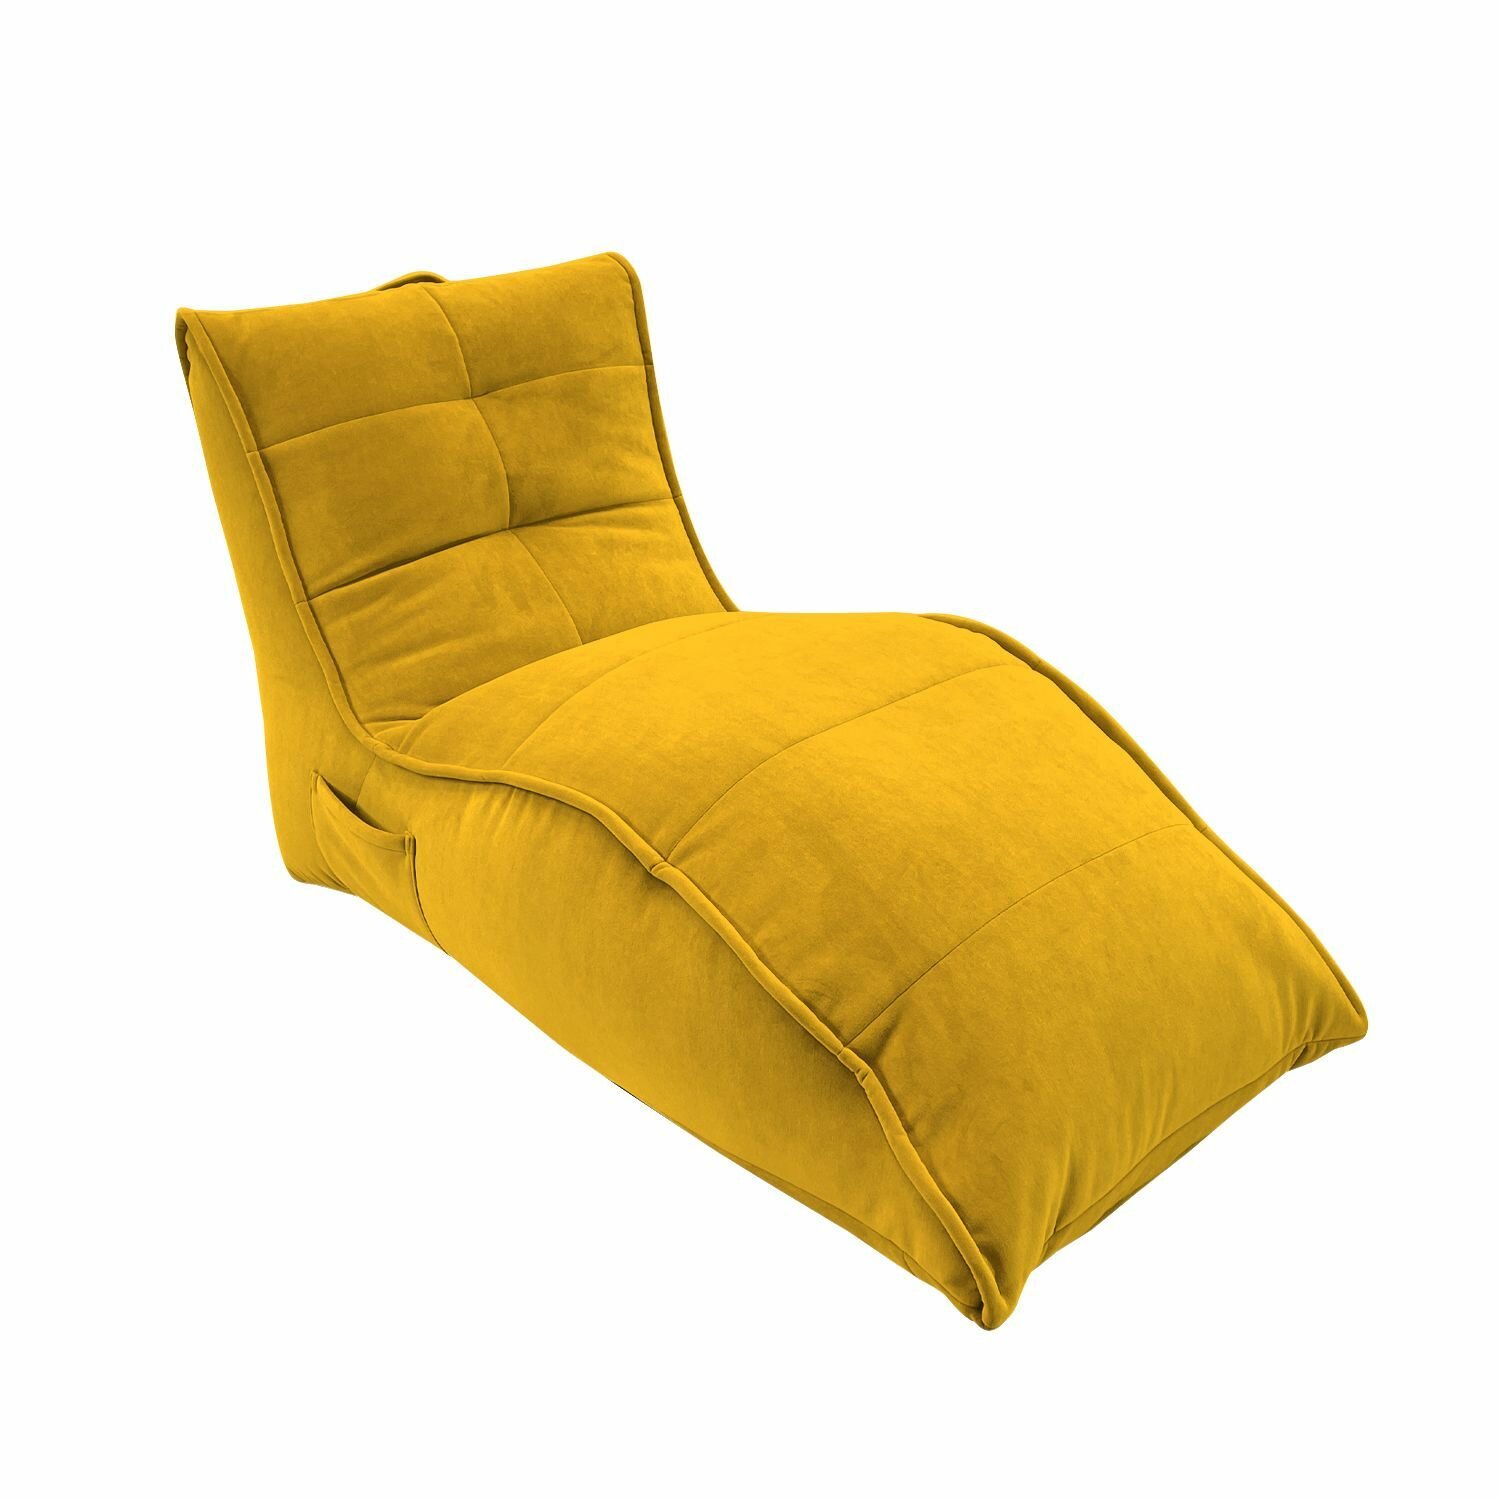 Бескаркасное кресло для отдыха aLounge - Avatar Sofa - Yellow Shine (велюр, желтый) - лаунж мебель в гостиную, спальню, детскую, на балкон